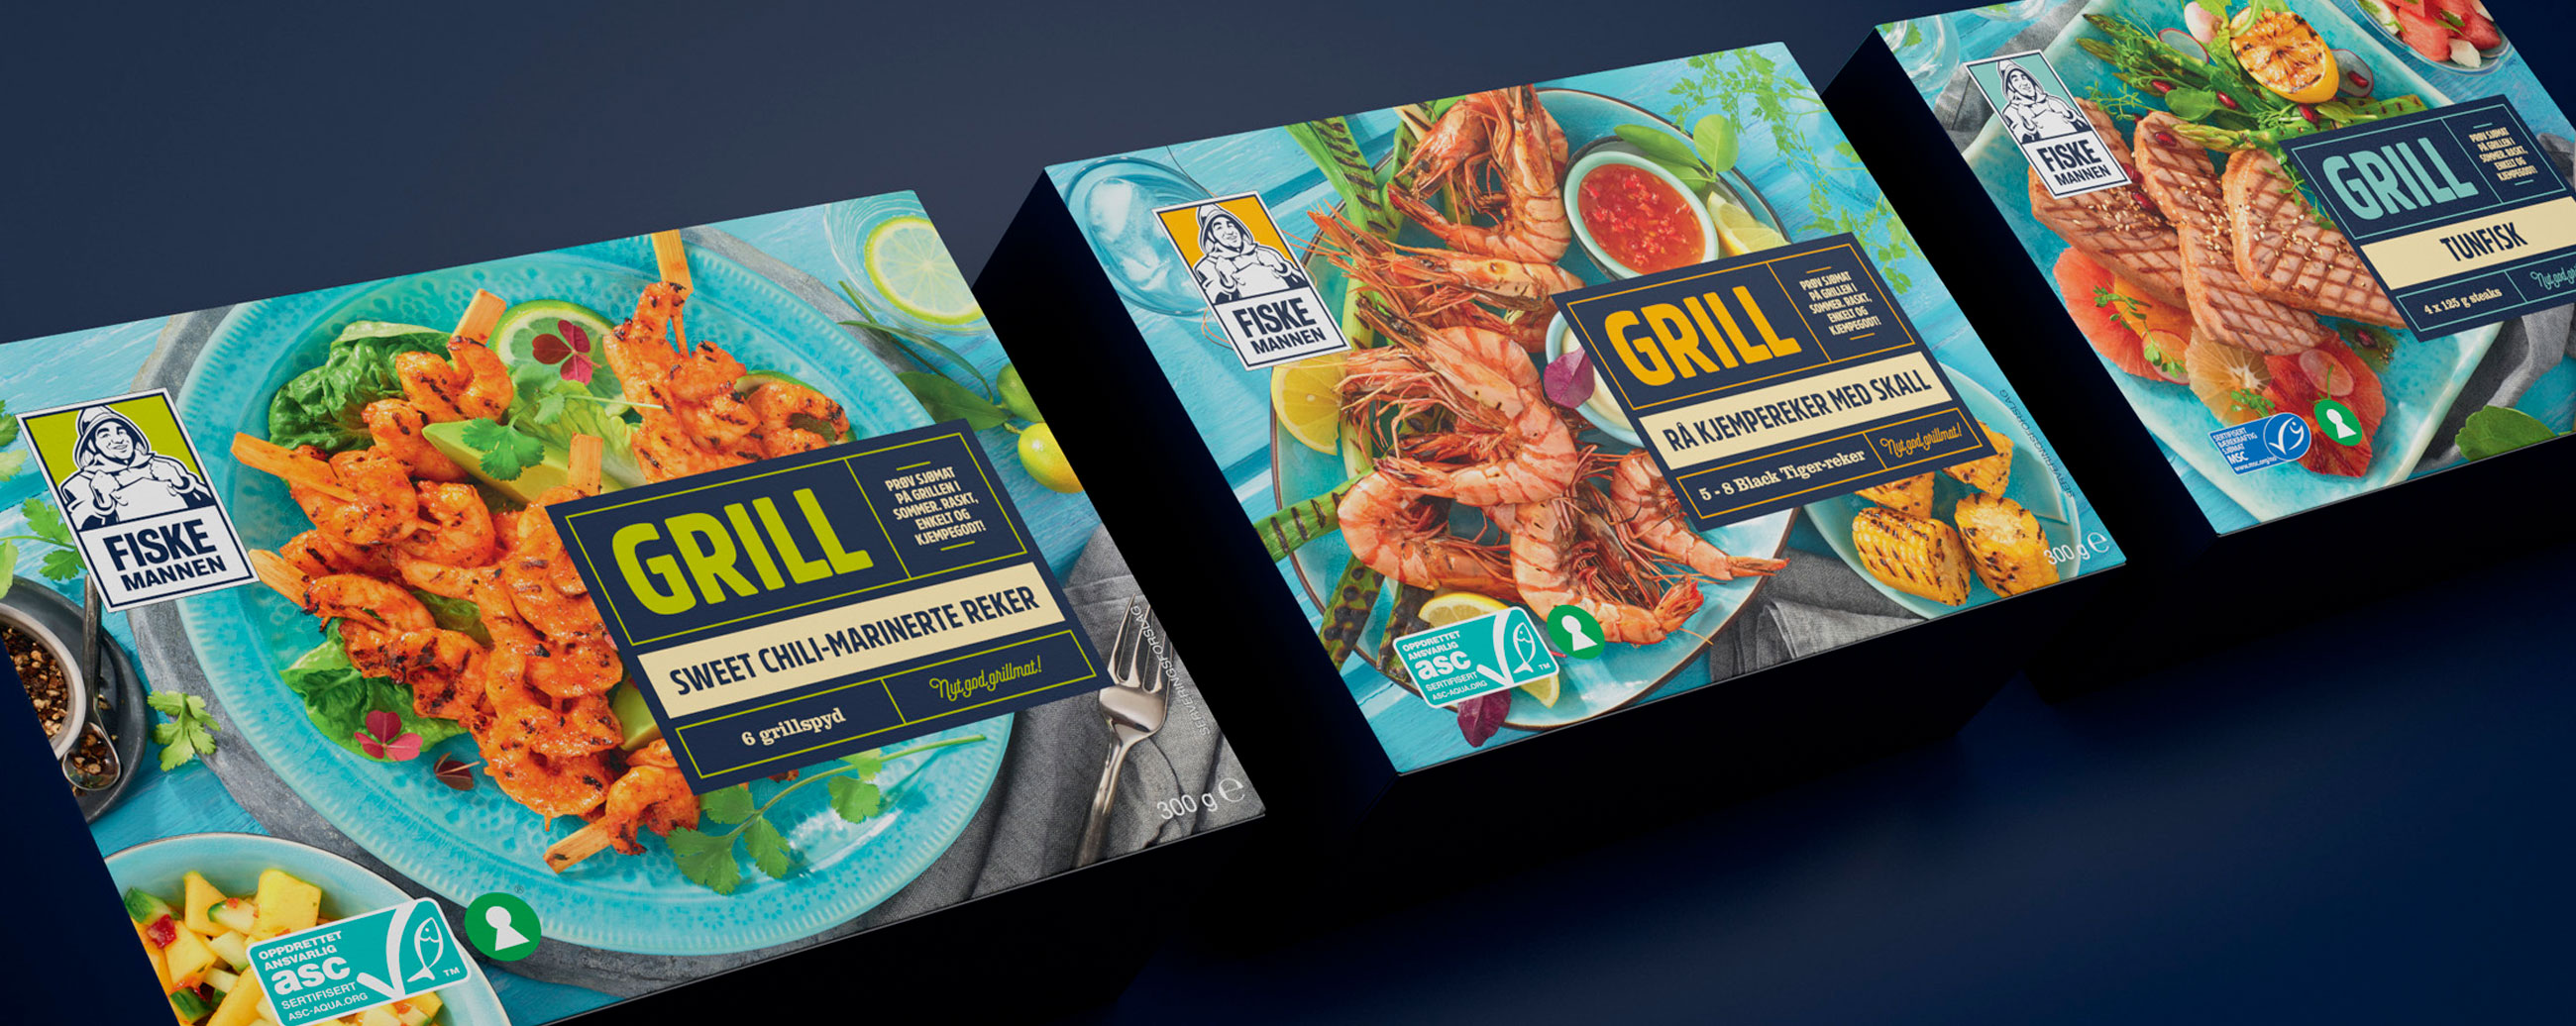 Fiskemannen Grill Sweet chili marinerte reker, rå kjempereker med skall og tunfisk. Emballasje packaging design.